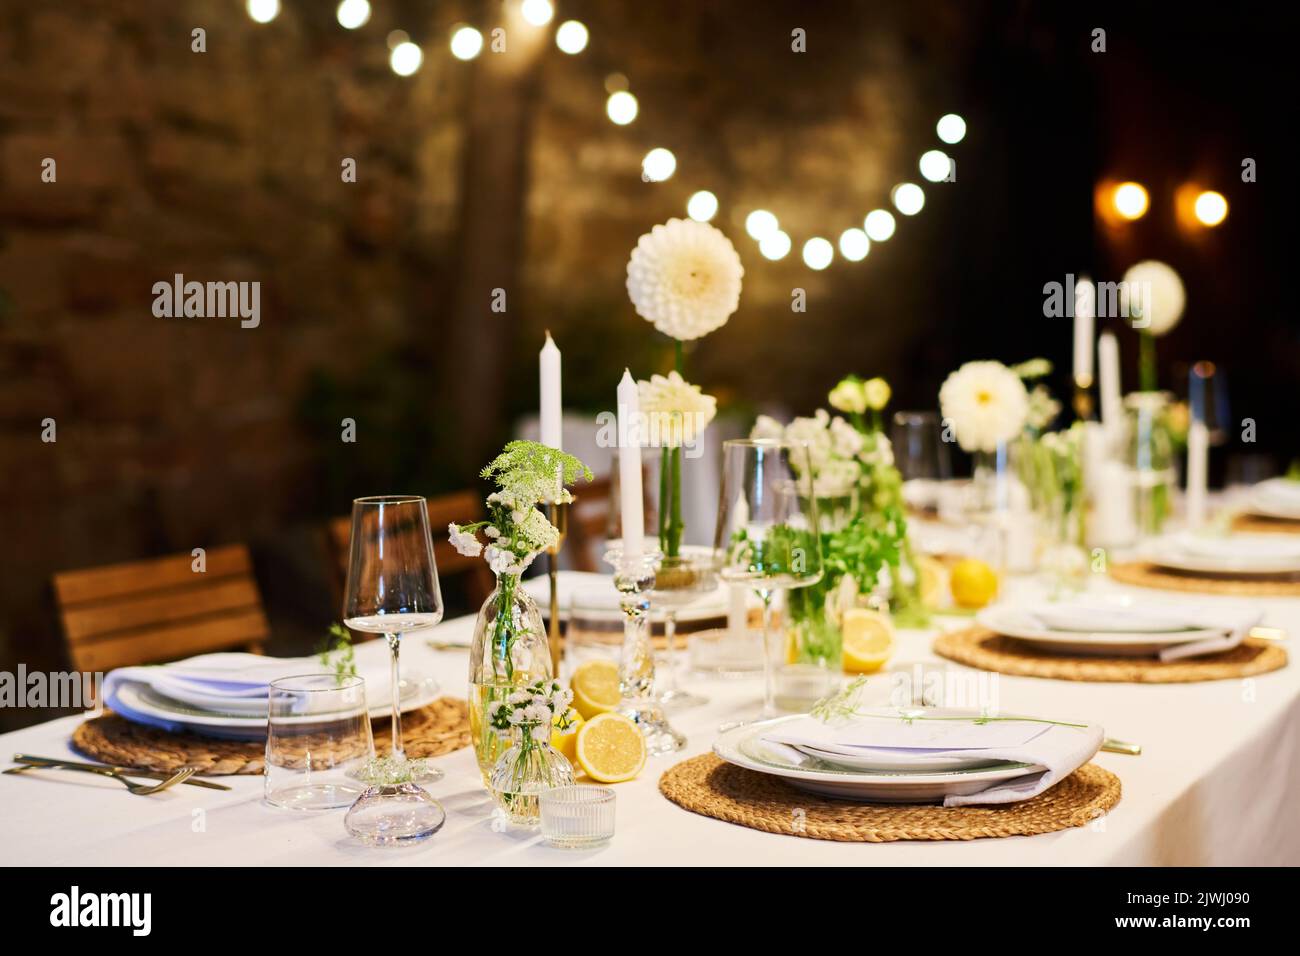 Festlicher Tisch mit zwei Reihen von Tellern mit Servietten, die Kerzen umgeben, Blumen in Vasen und Weingläser, die für das Hochzeitsfest vorbereitet sind Stockfoto